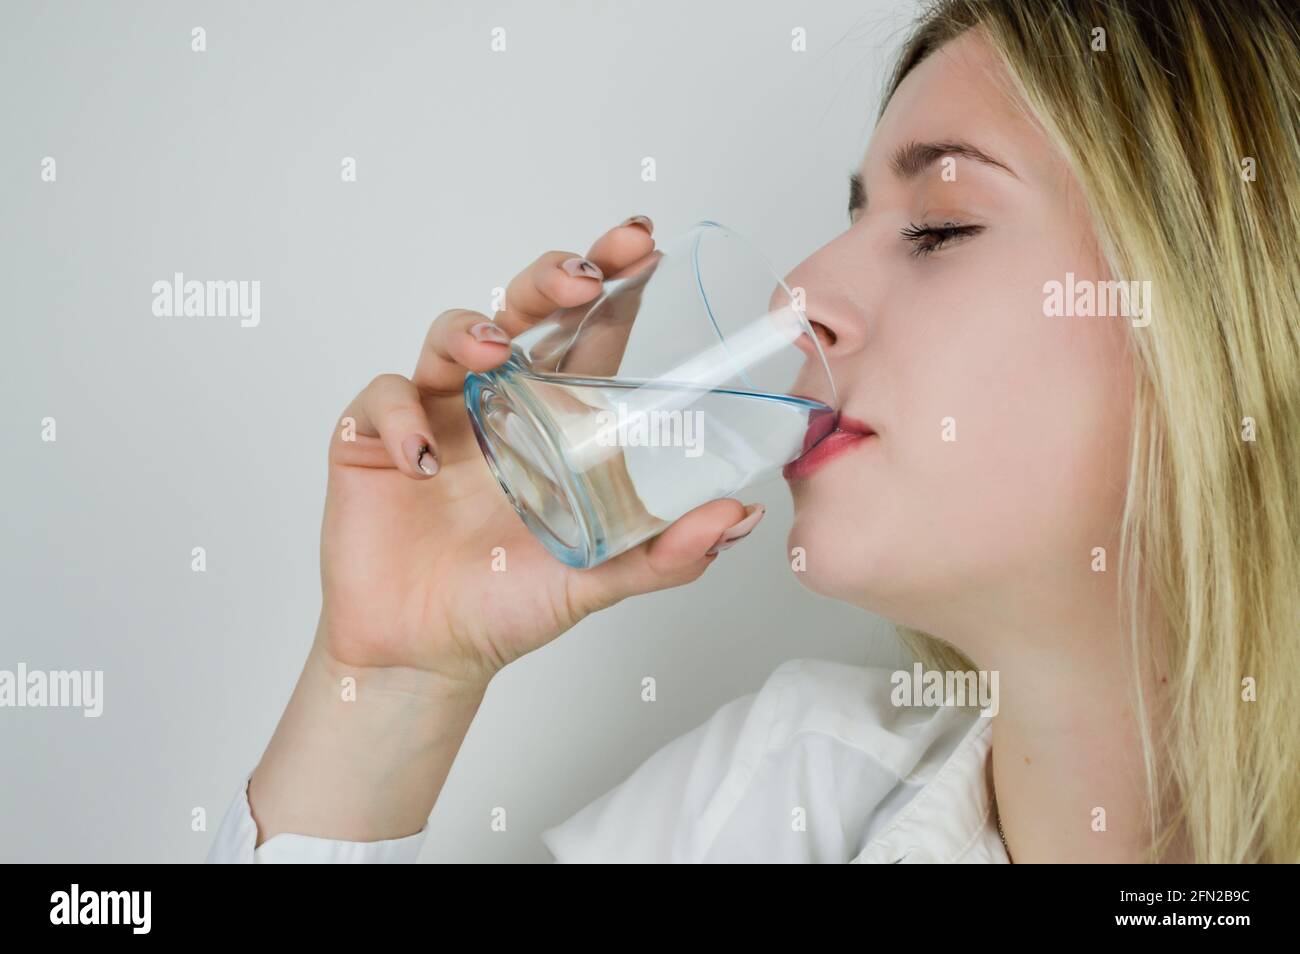 Portrait d'une belle jeune femme blonde qui boit un verre d'eau Photo Stock  - Alamy